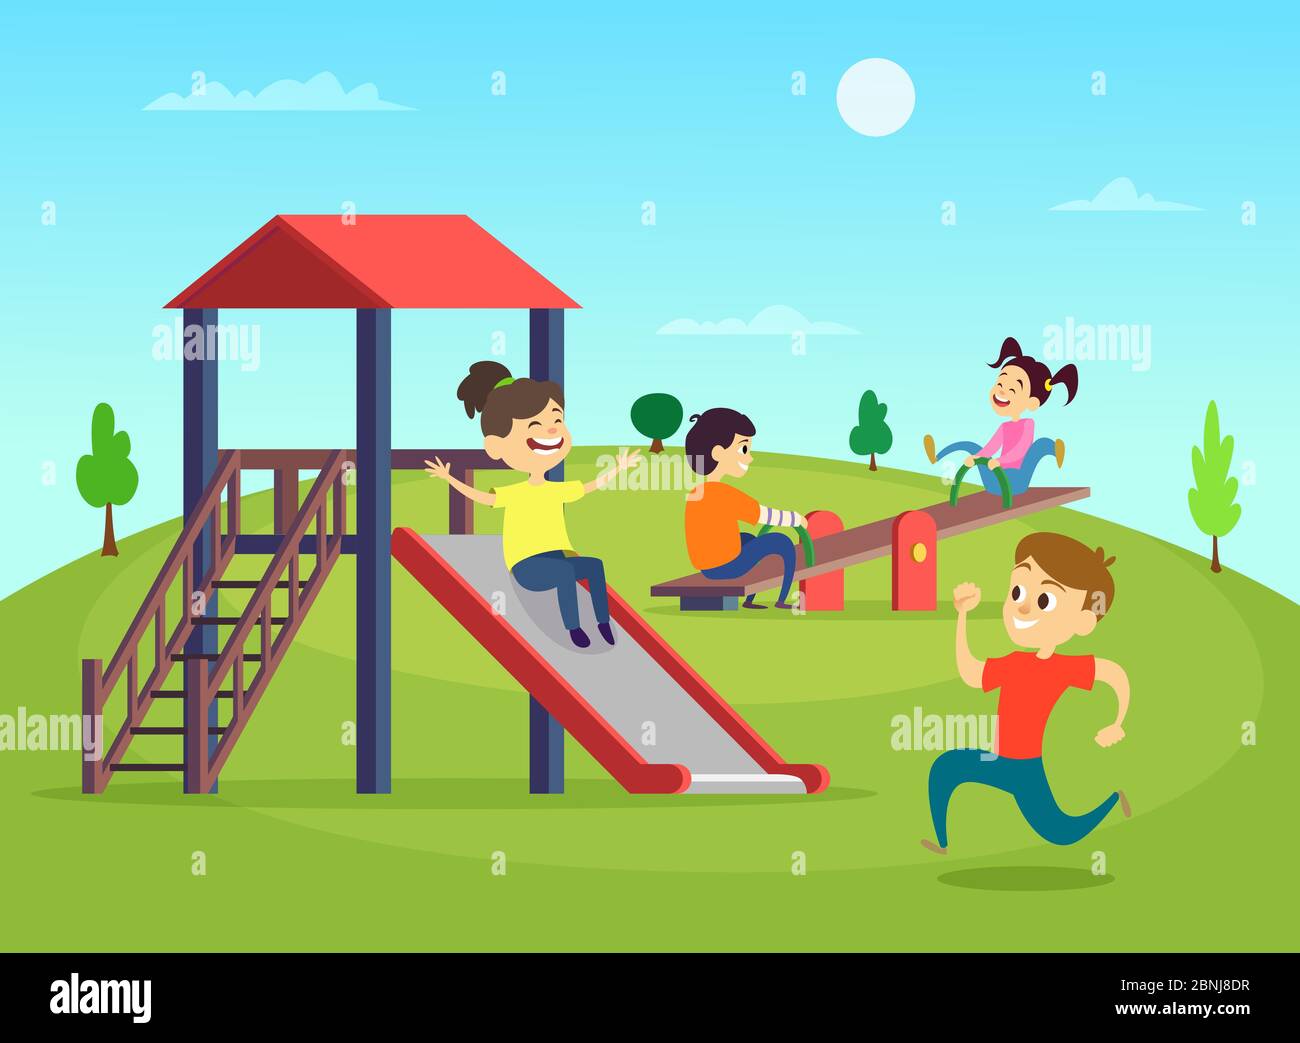 Lustig spielende Kinder auf dem Spielplatz. Vektorgrafik Stock Vektor